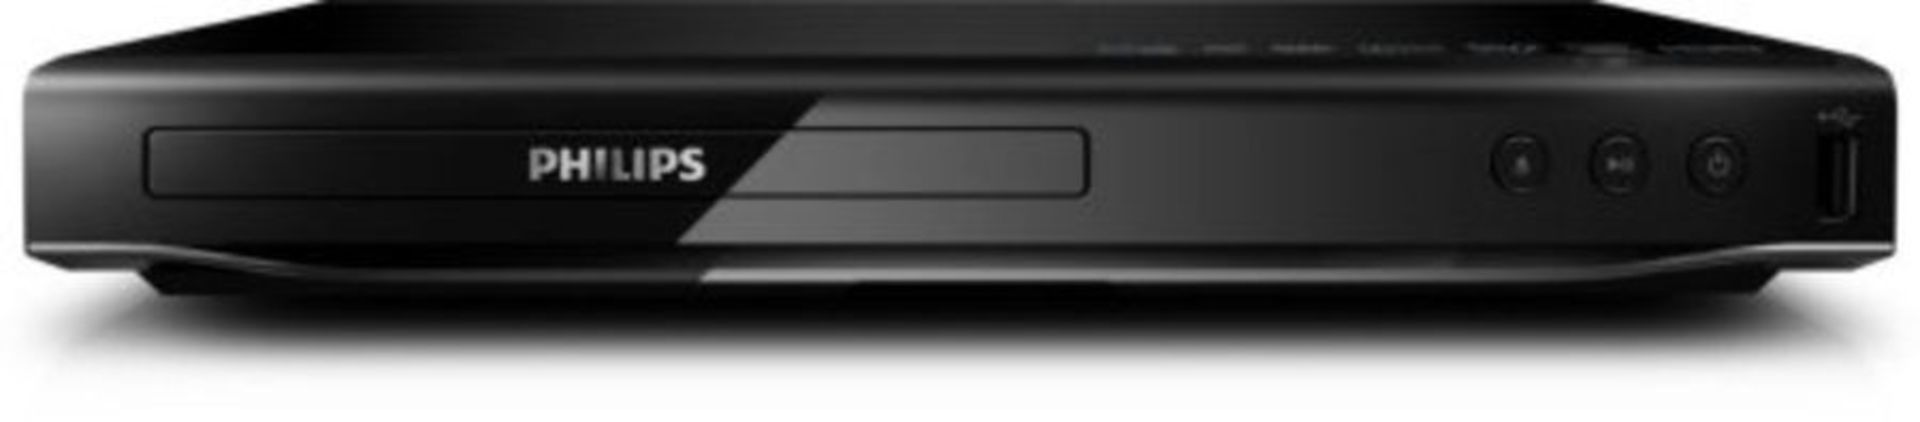 Philips DVD player DVP2880 HDMI 1080p USB 2.0 DivX Ultra CinemaPlus